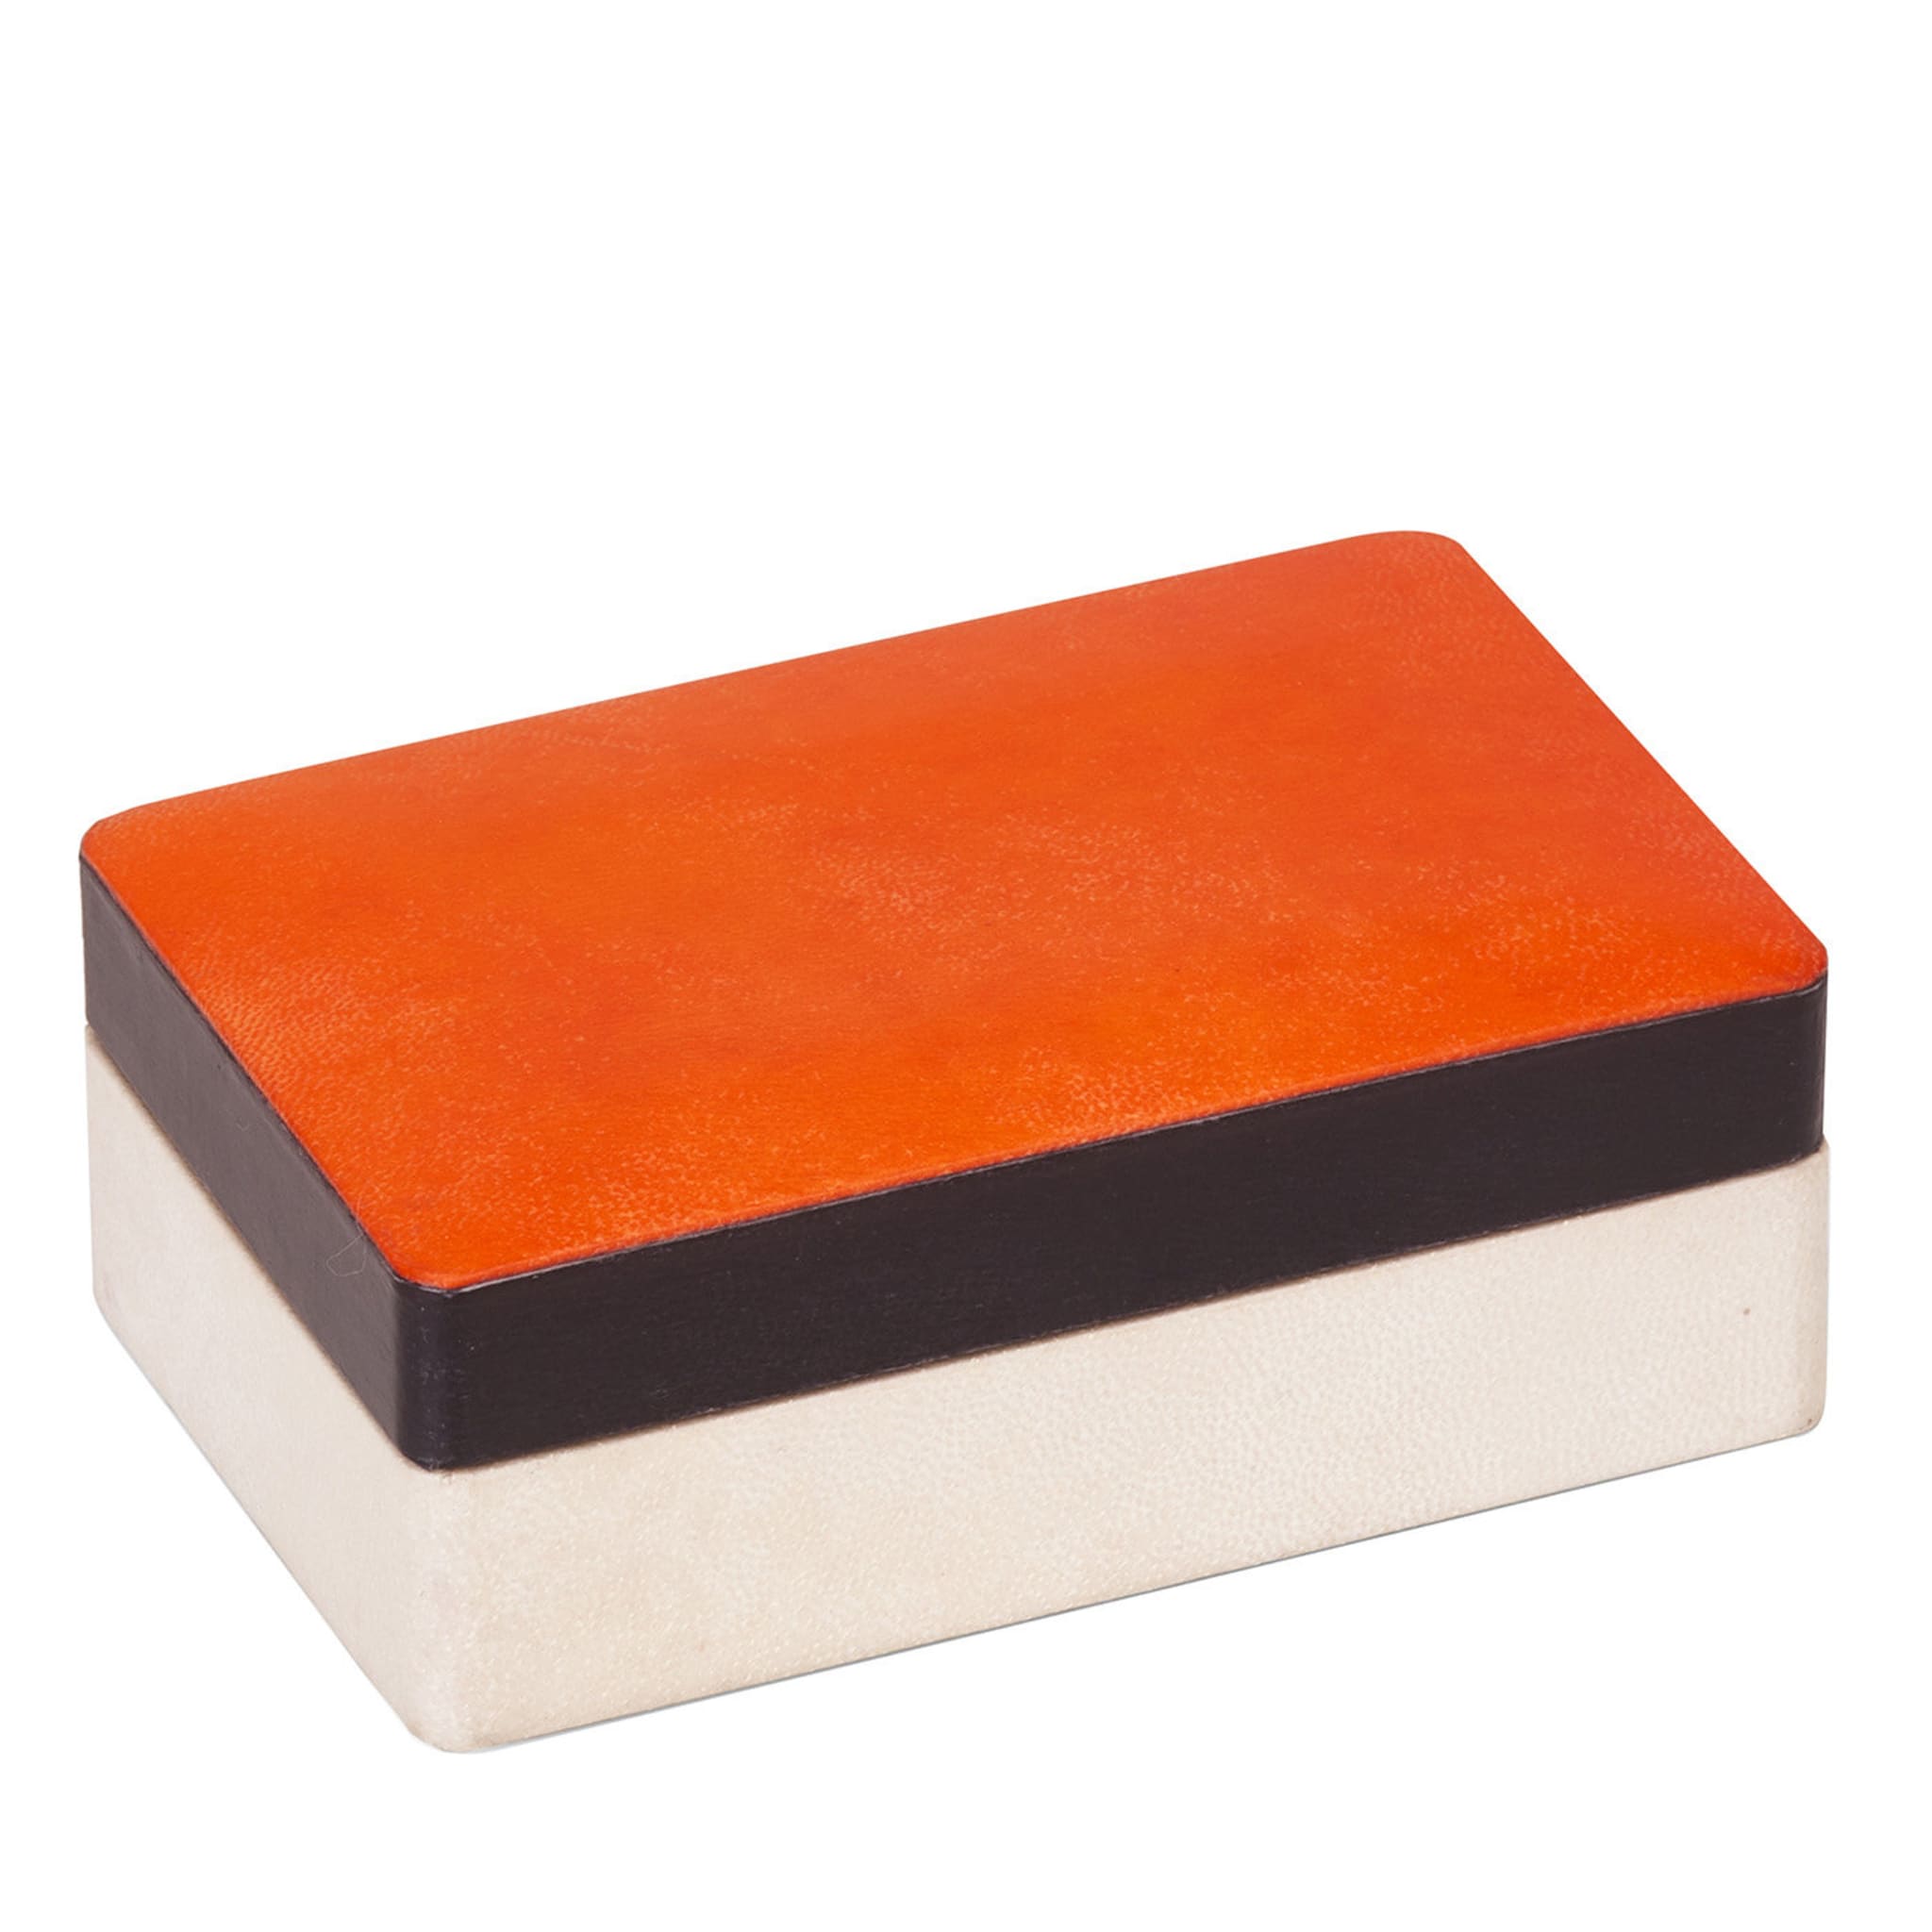 Orange Rectangular Box - Main view